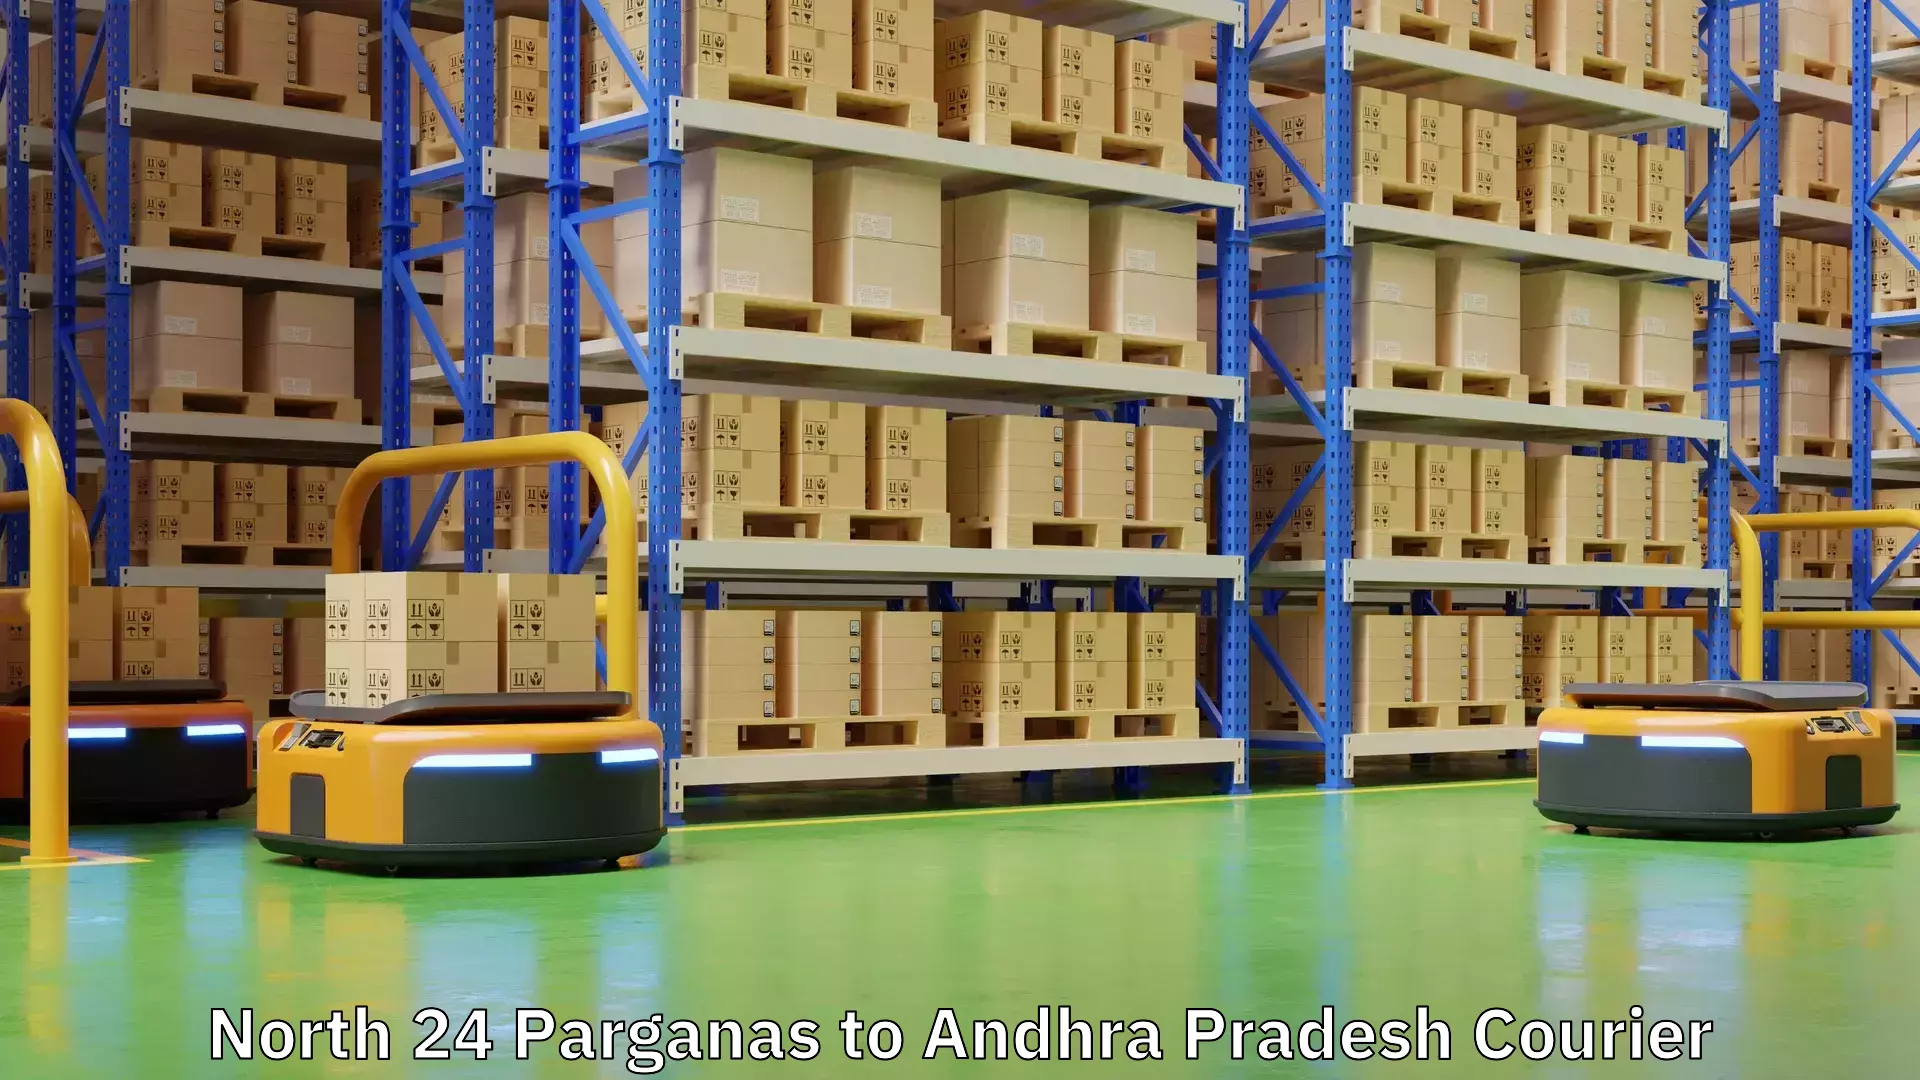 24-hour courier service North 24 Parganas to Andhra Pradesh